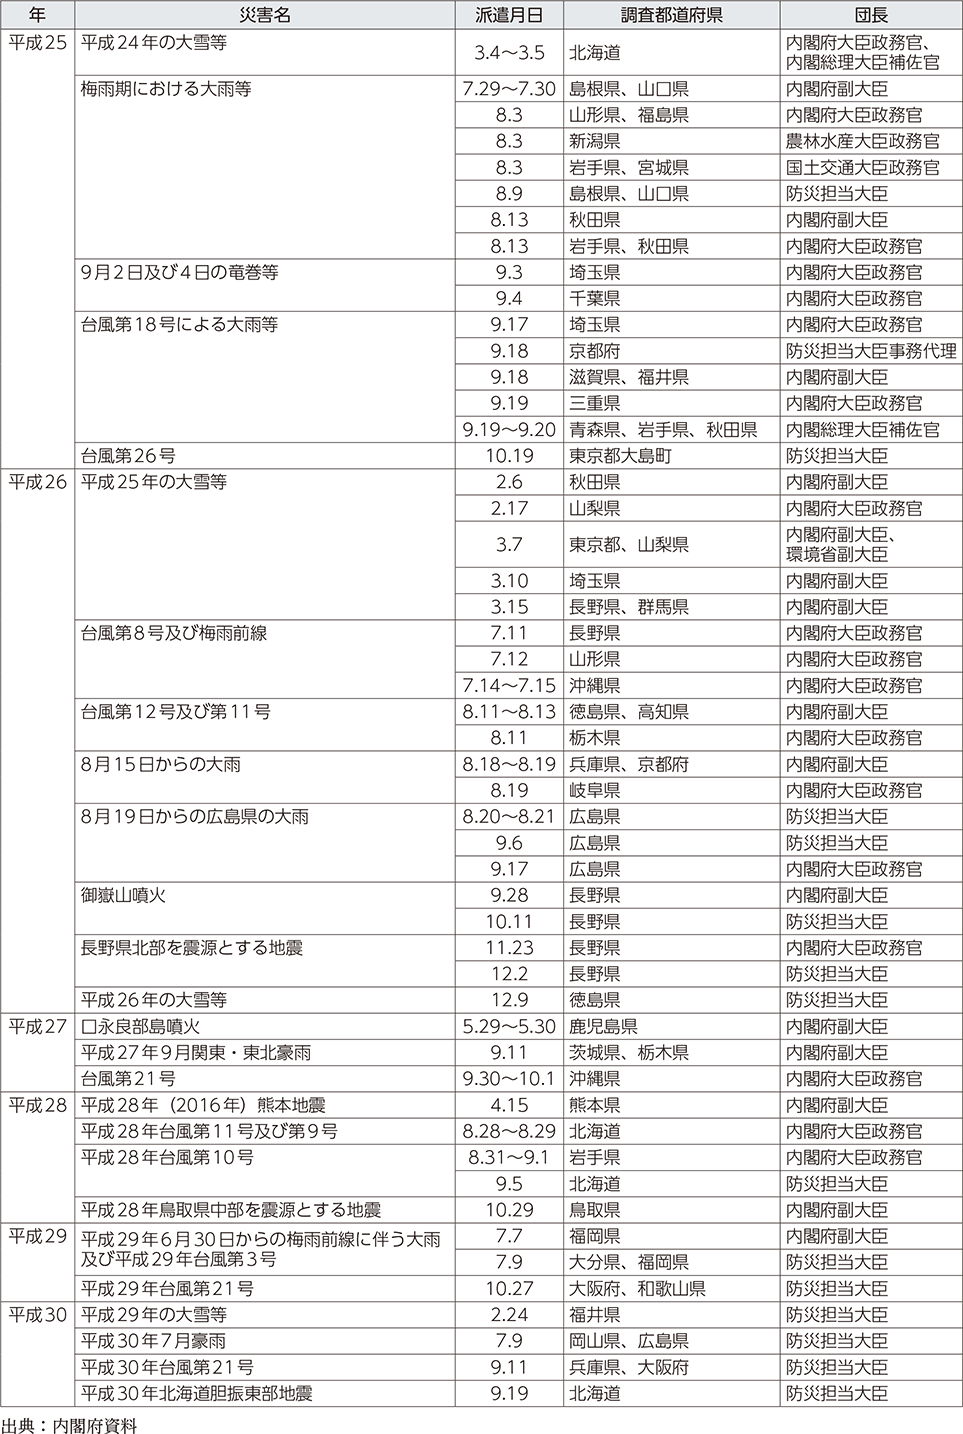 附属資料11　政府調査団の派遣状況（阪神・淡路大震災以降）（2）